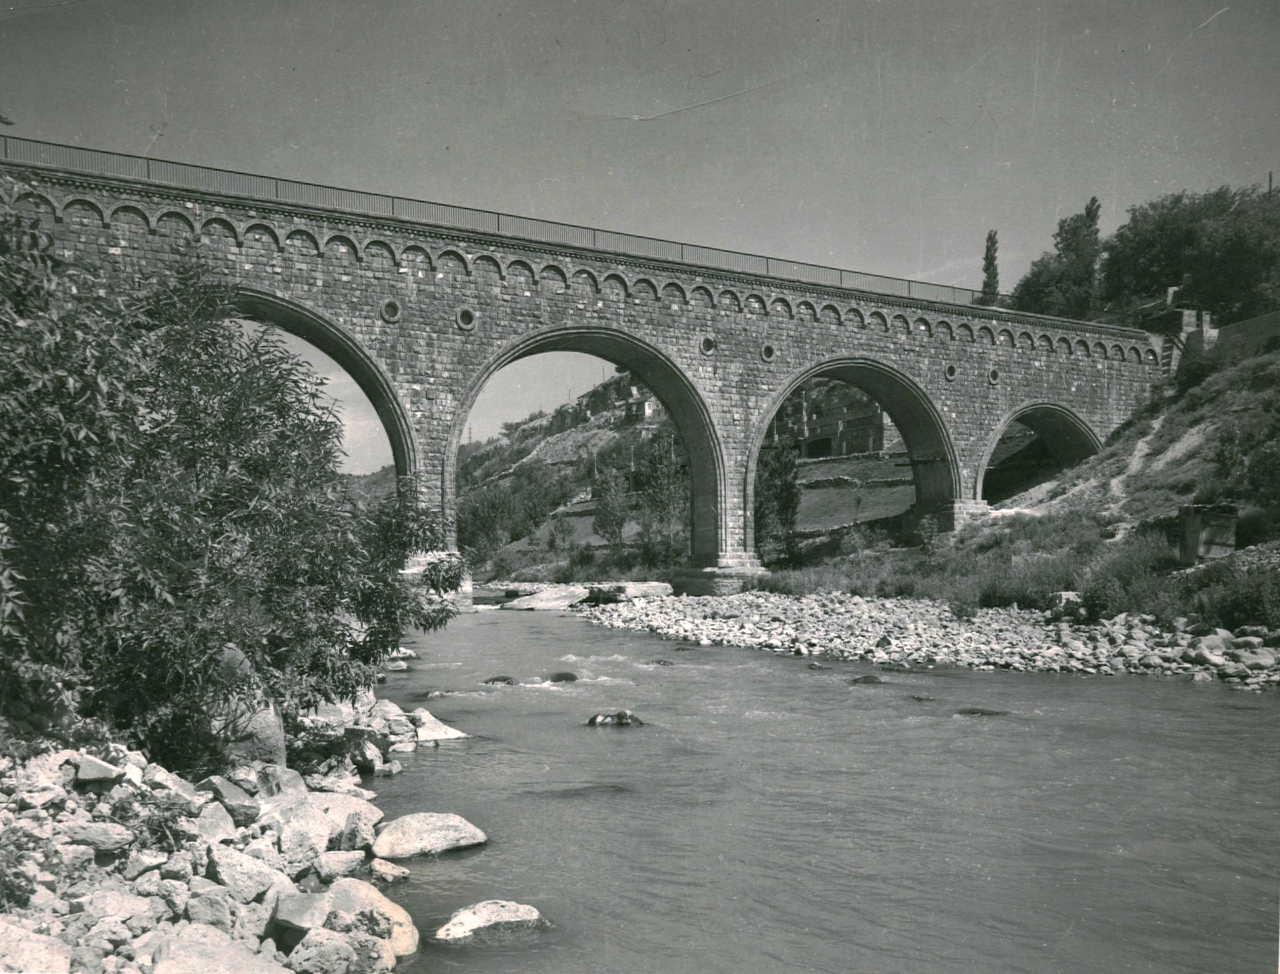  Ակվեդուկ Հրազդան գետի վրա, 1949թ. (ջրանցույց) 